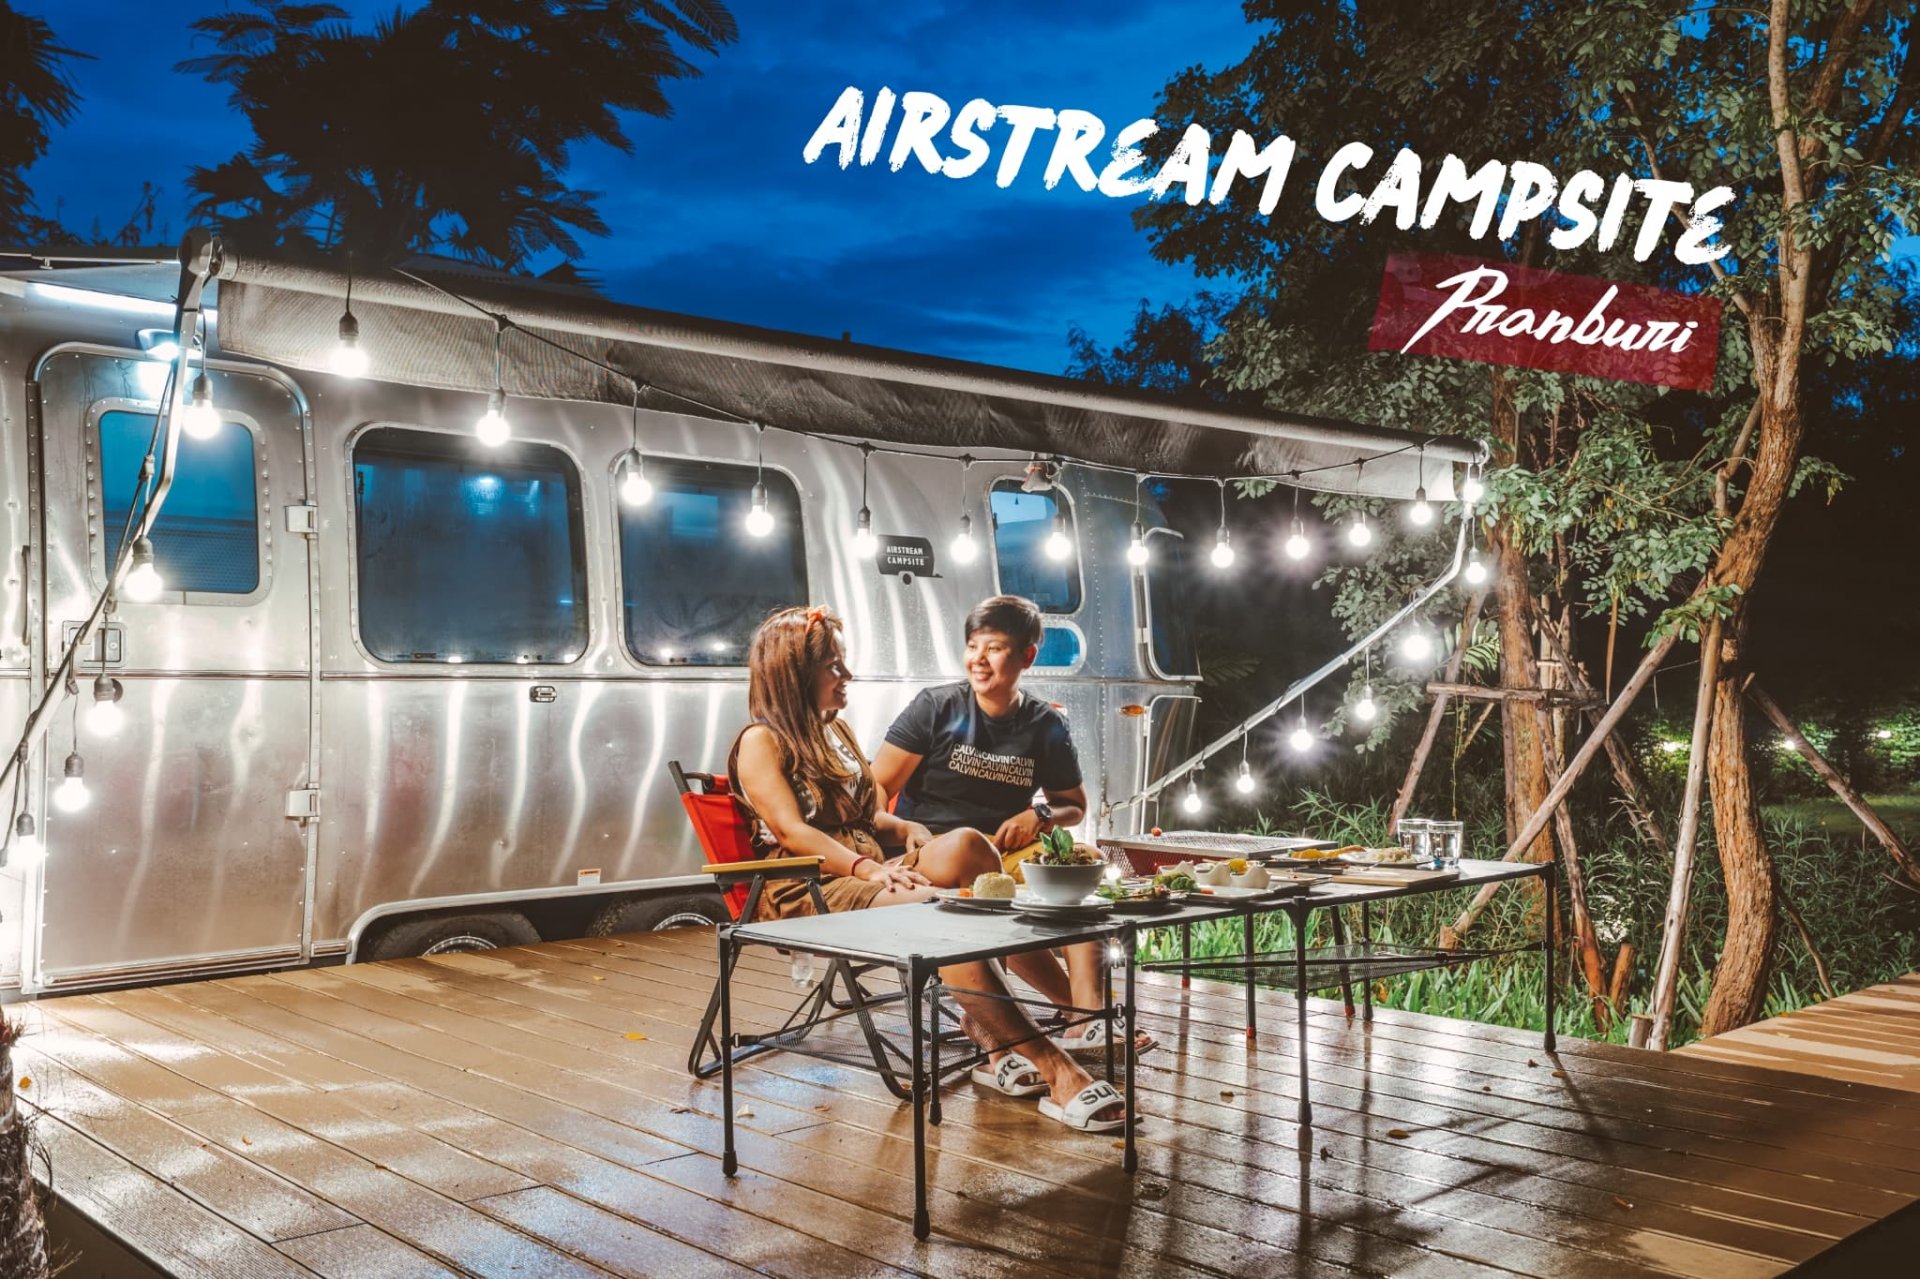 Airstream Campsite Pranburi ชวนแฟนเปลี่ยนบรรยากาศไปนอนรถบ้านสุดชิคที่ปราณบุรี